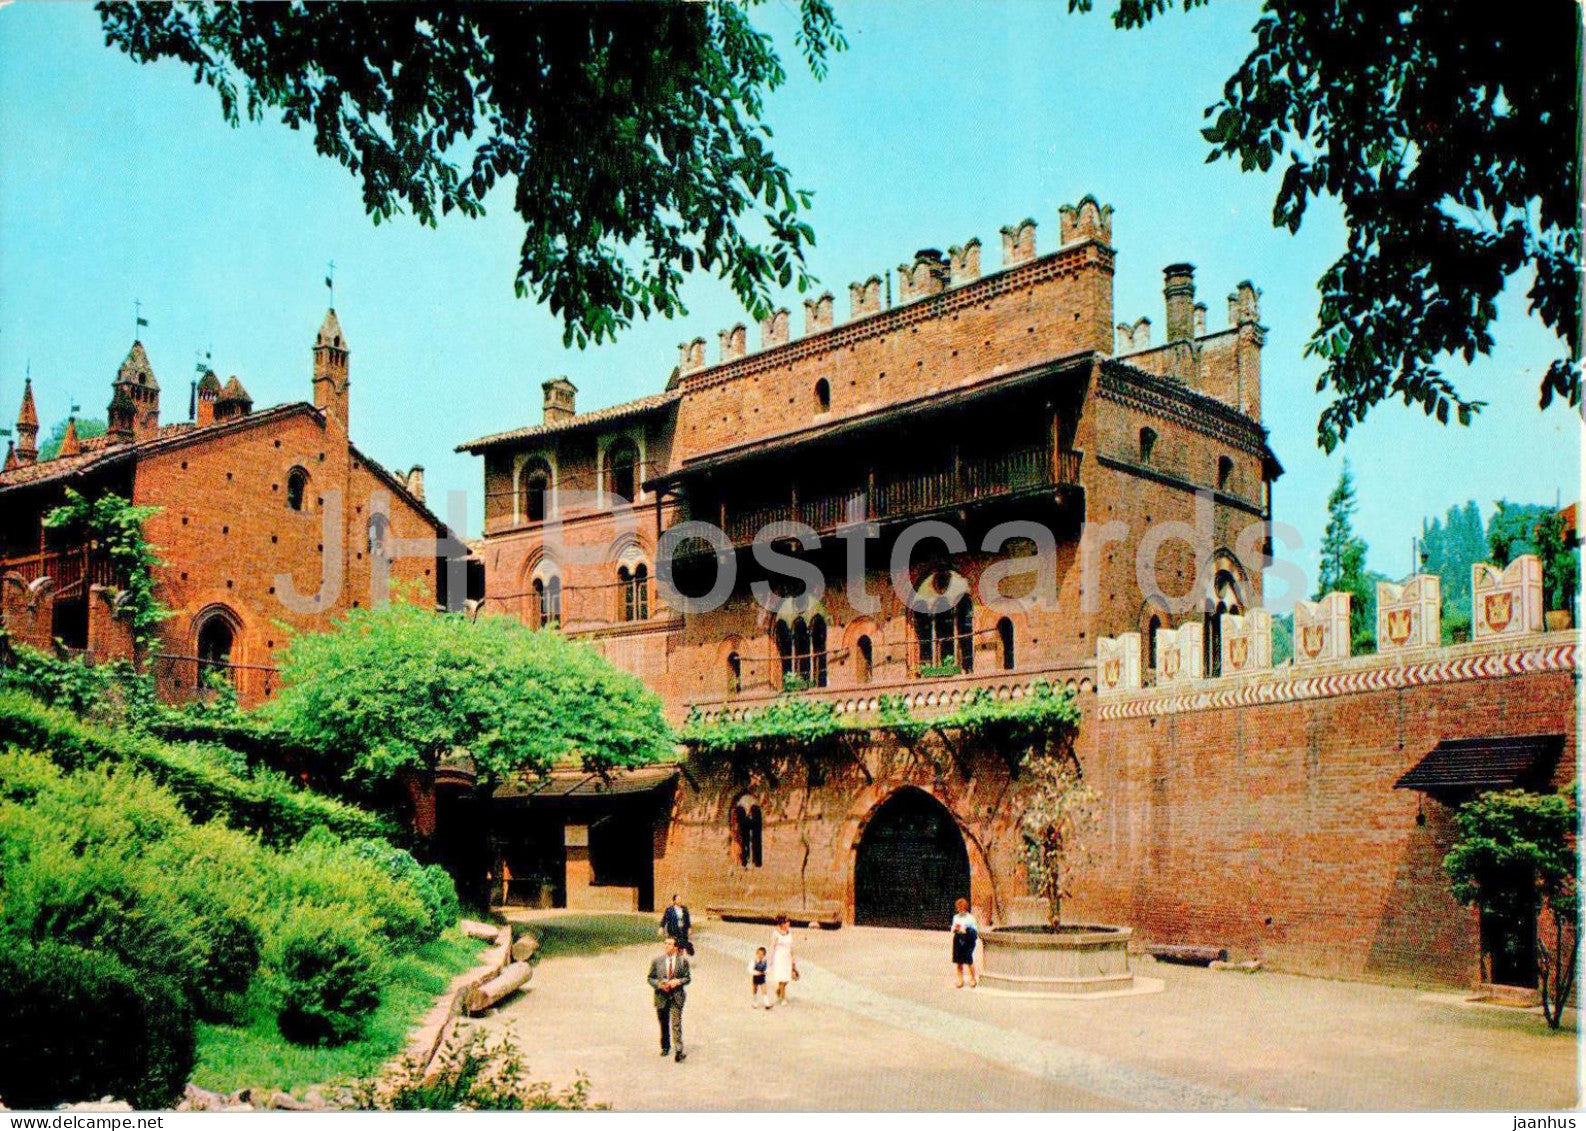 Torino - Turin - Il Borgo e il Castello Medioevale - The Borough and the Medievial Castle - 318 - 1979 - Italy - used - JH Postcards